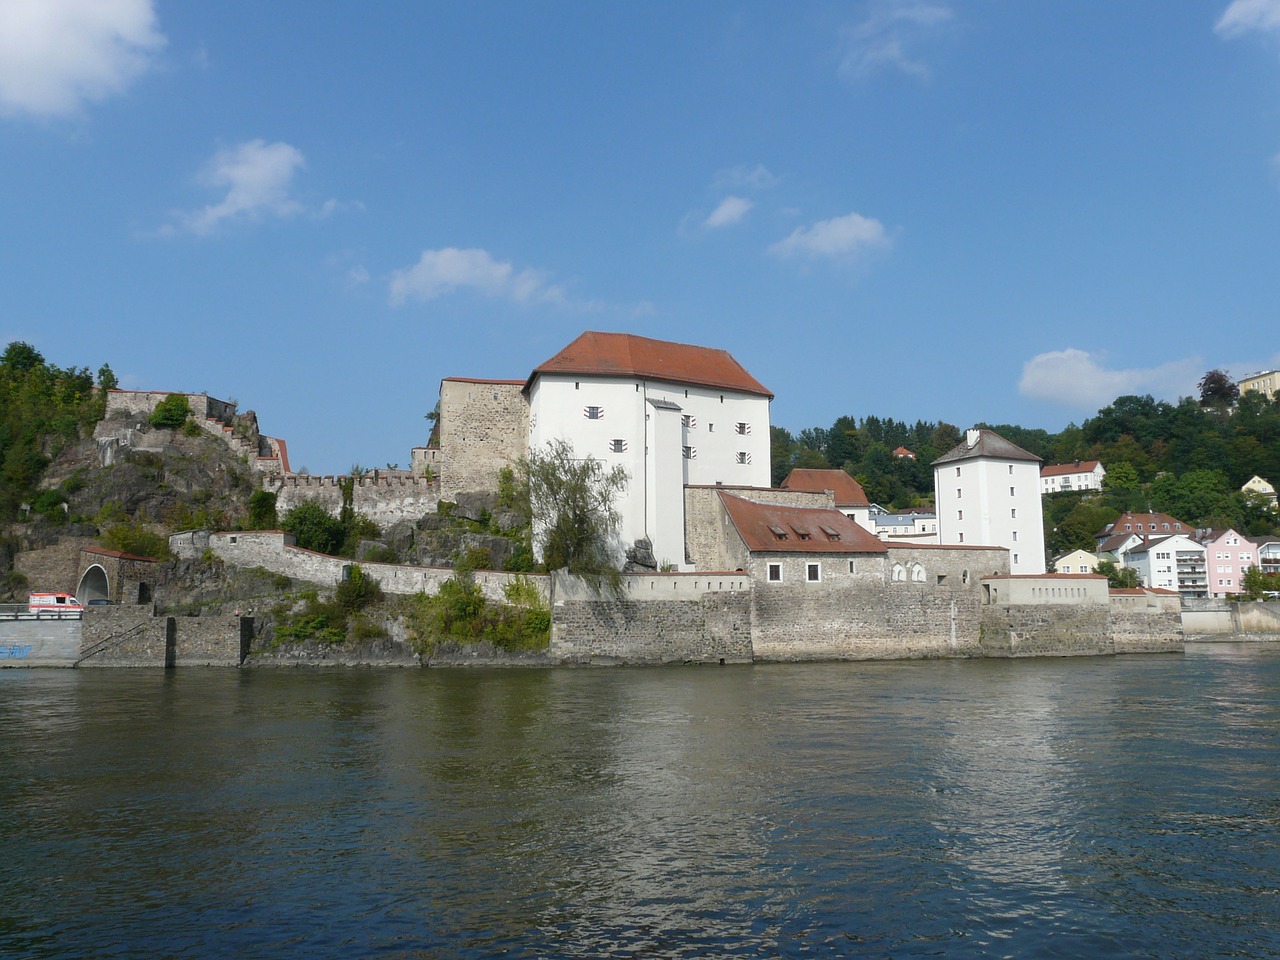 Apatinis Namas, Pilis, Passau, Viršutinė Dalis, Tvirtovė, Pastatas, Architektūra, Susivienijimas, Ilz, Danube